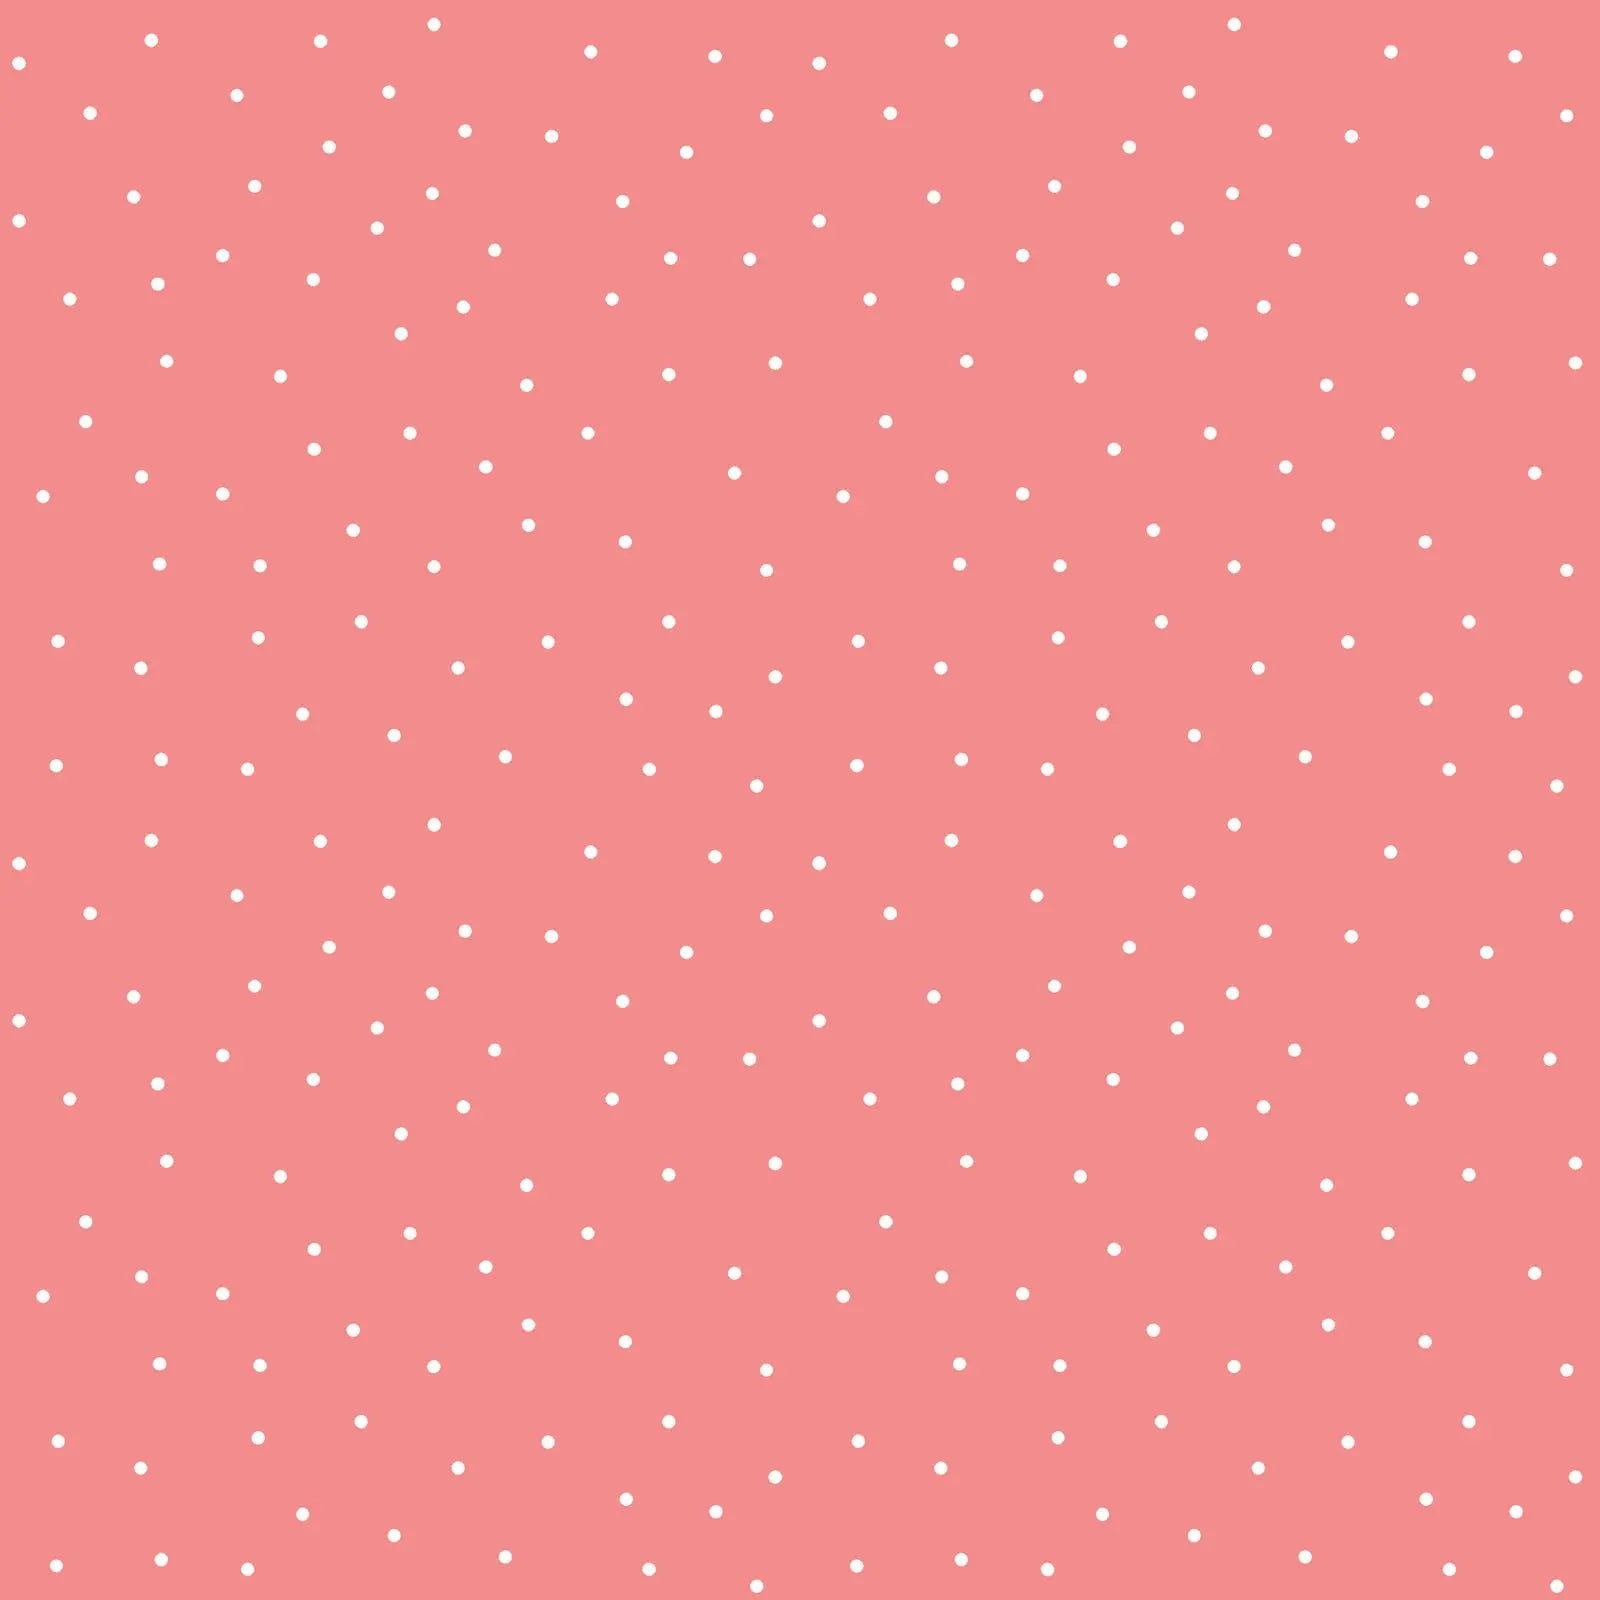 Pink Small Dot Cotton Wideback Fabric per yard